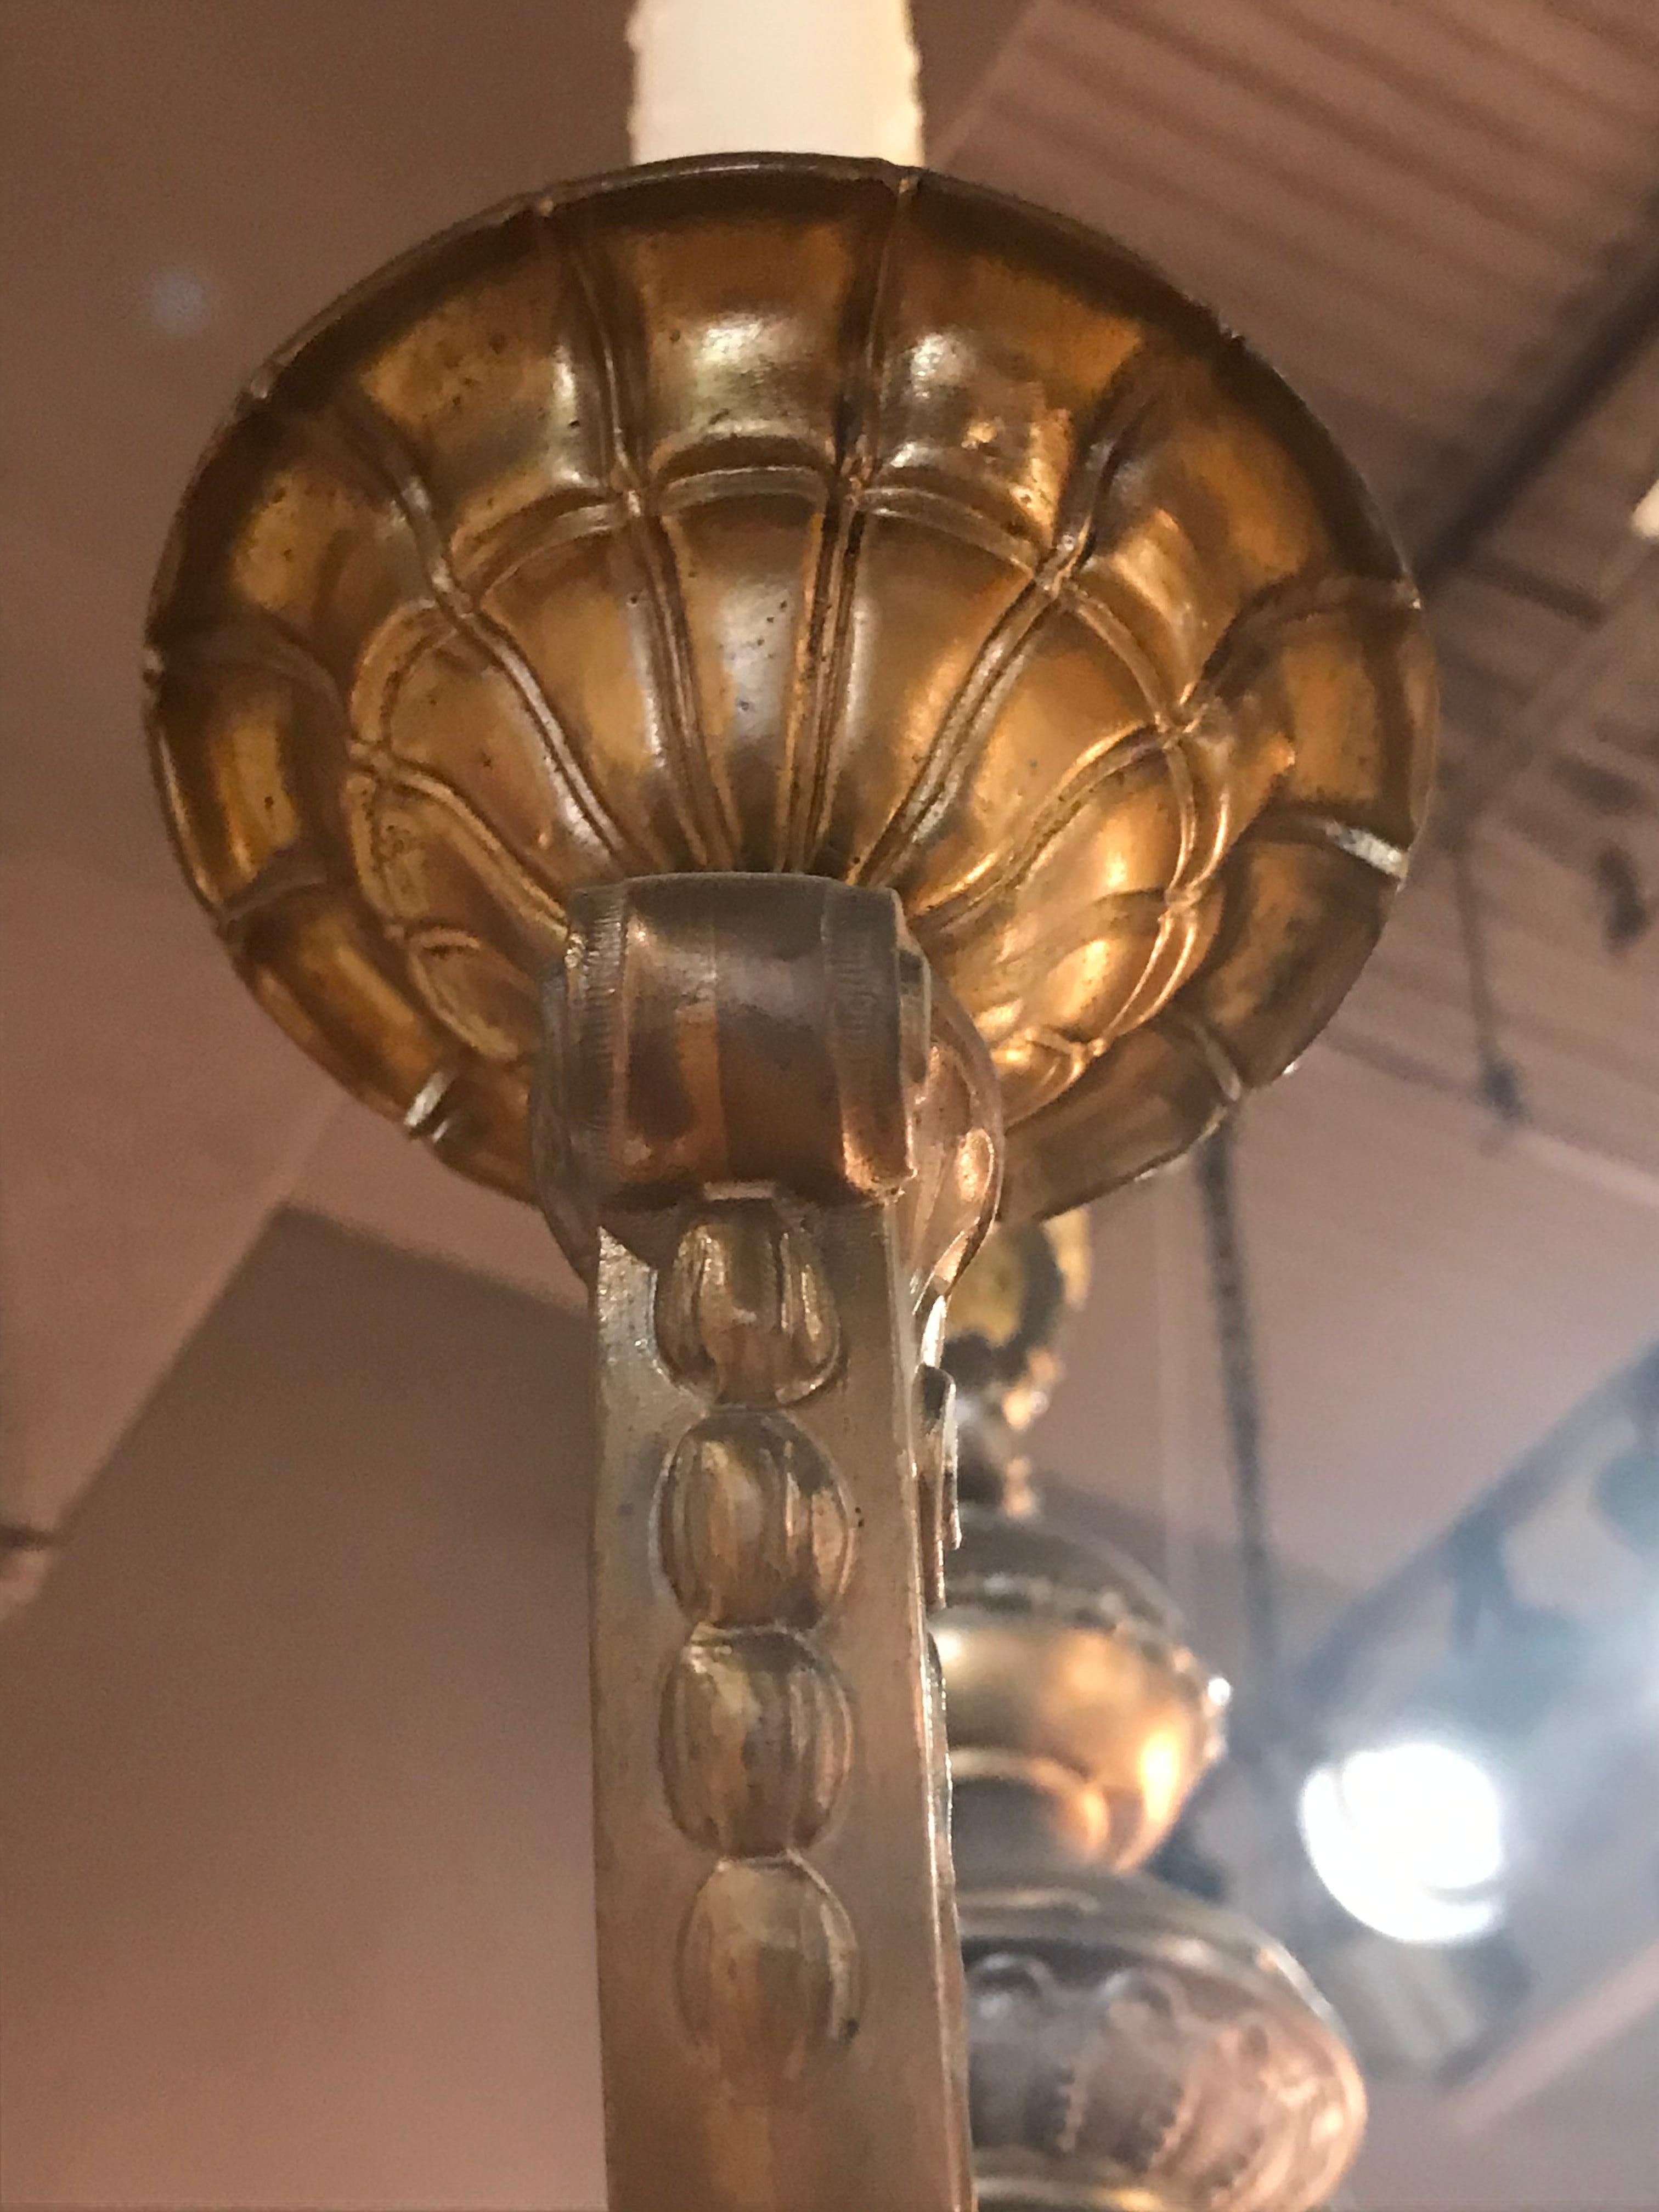 Un superbe lustre de style Régence en bronze doré. Travail et détails très fins. 8 lumières.
France, datant d'environ 1900.
Dimensions : Hauteur 27